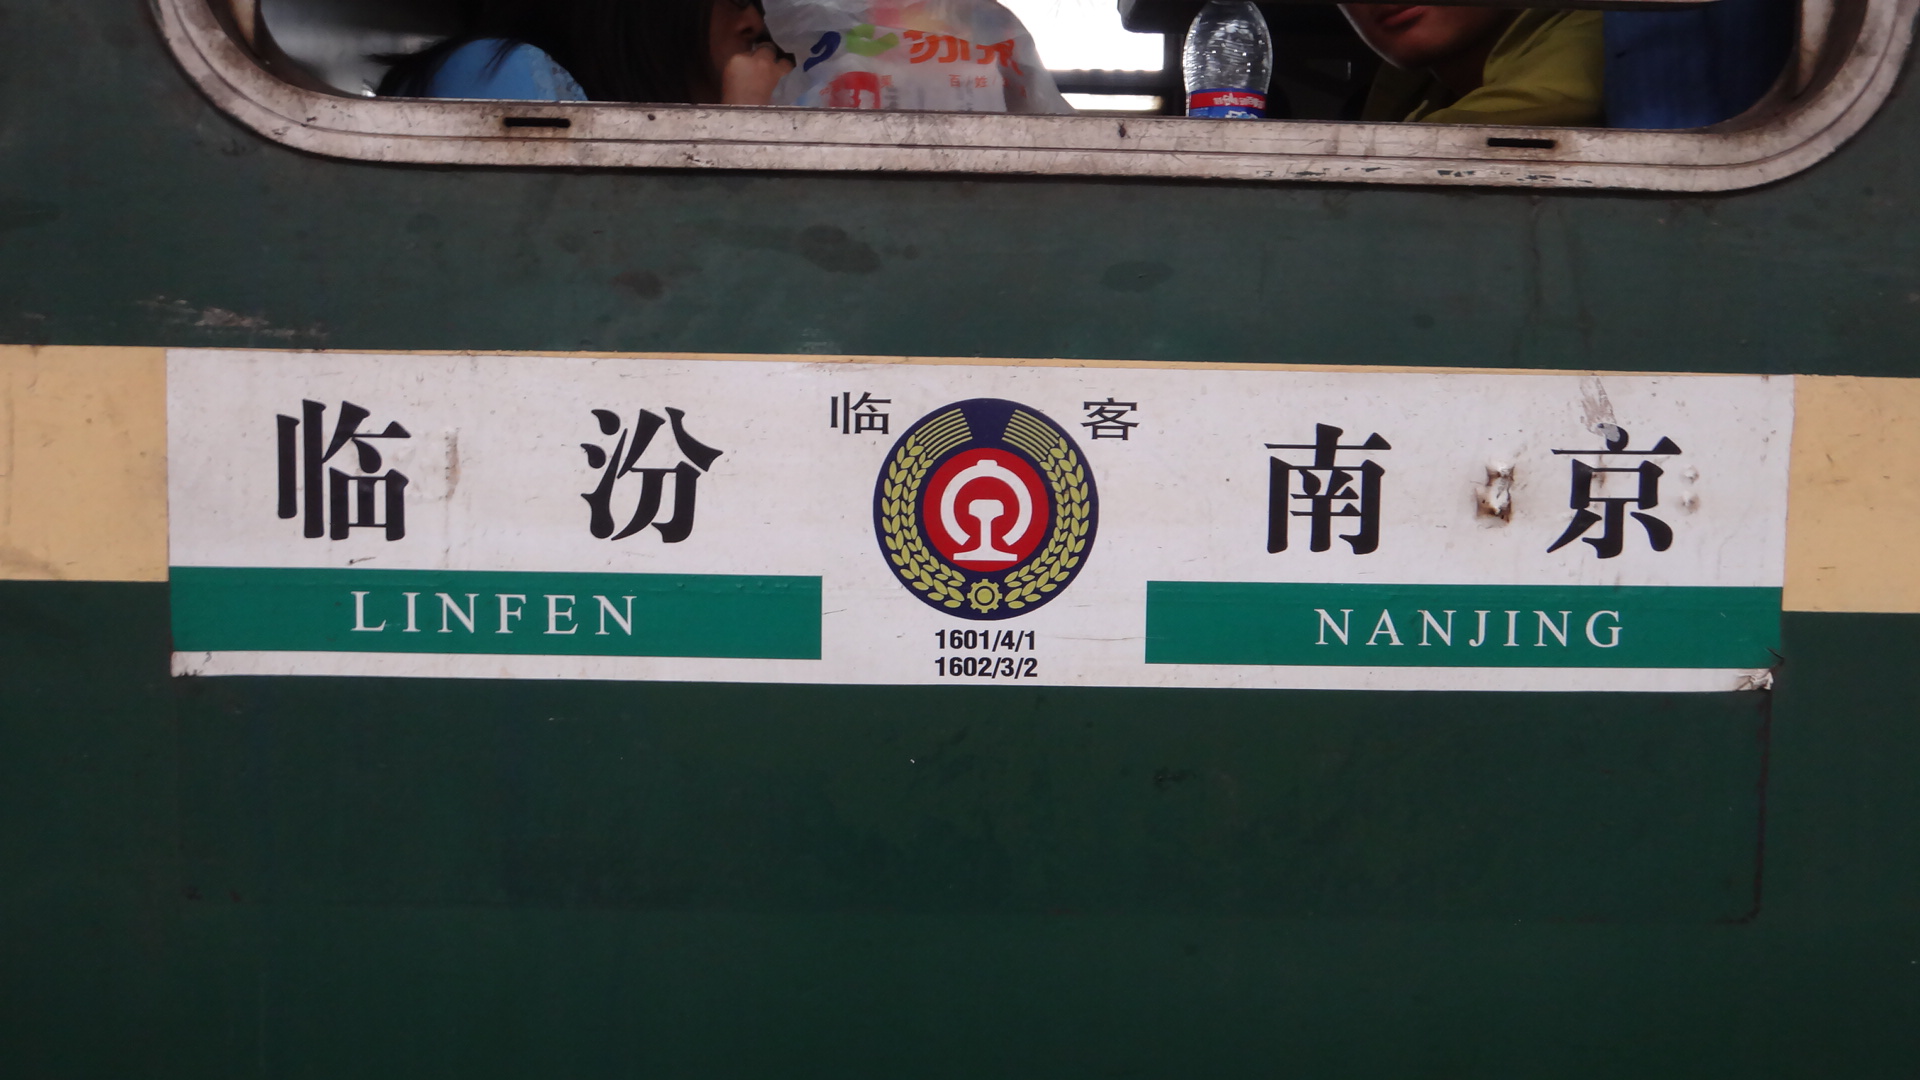 曾经的绿皮临客 2011年7月1日,新开临汾-南京图定临时旅客列车1对